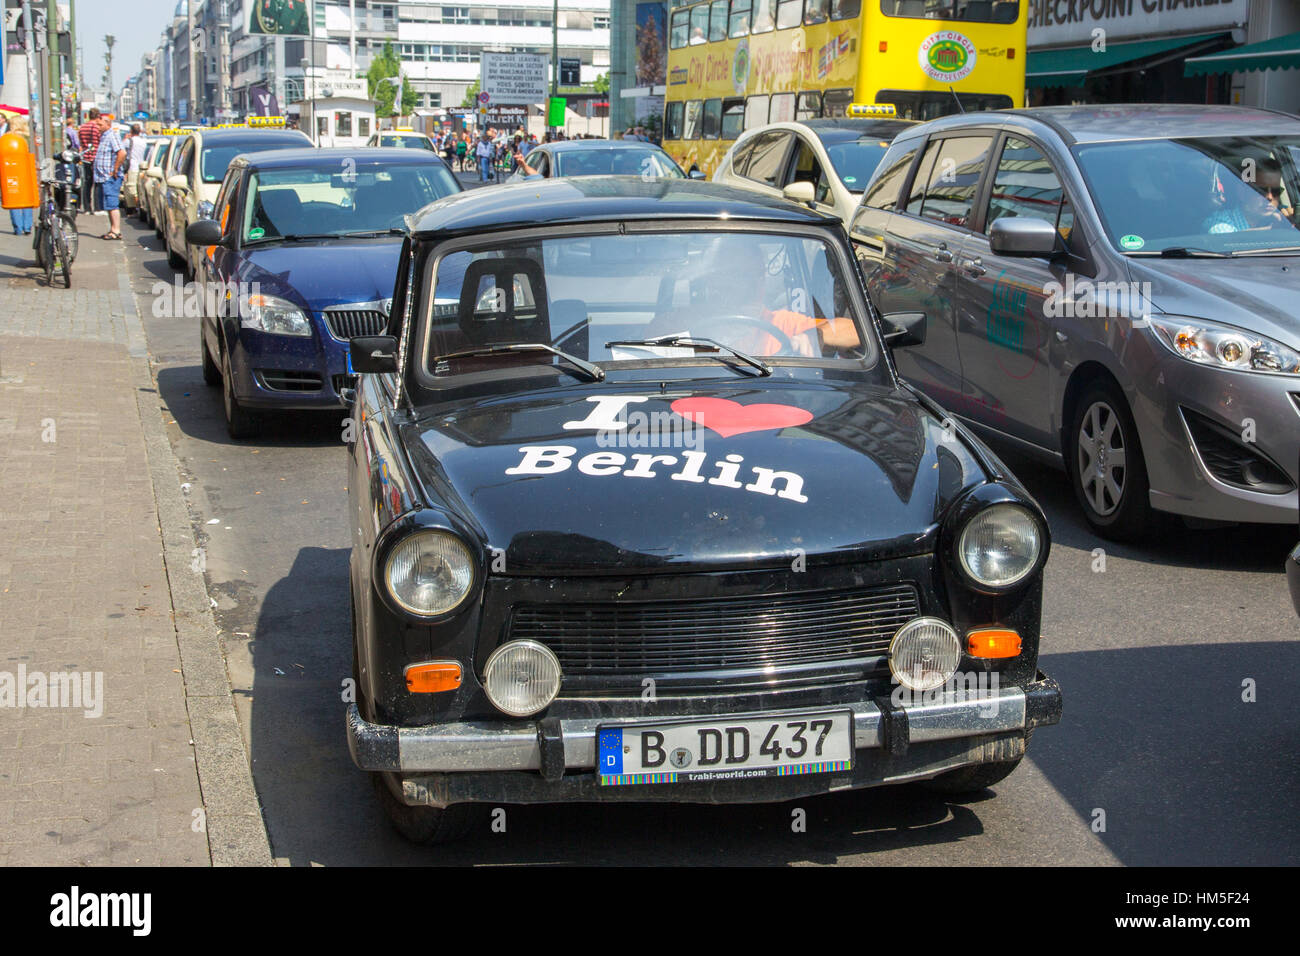 BERLIN, ALLEMAGNE - le 23 mai 2014 : voiture Trabant avec 'J'aime Berlin'. L'Allemagne de l'est à l'emploi était une Trabant voiture familiale populaire dans le bloc oriental au cours de t Banque D'Images